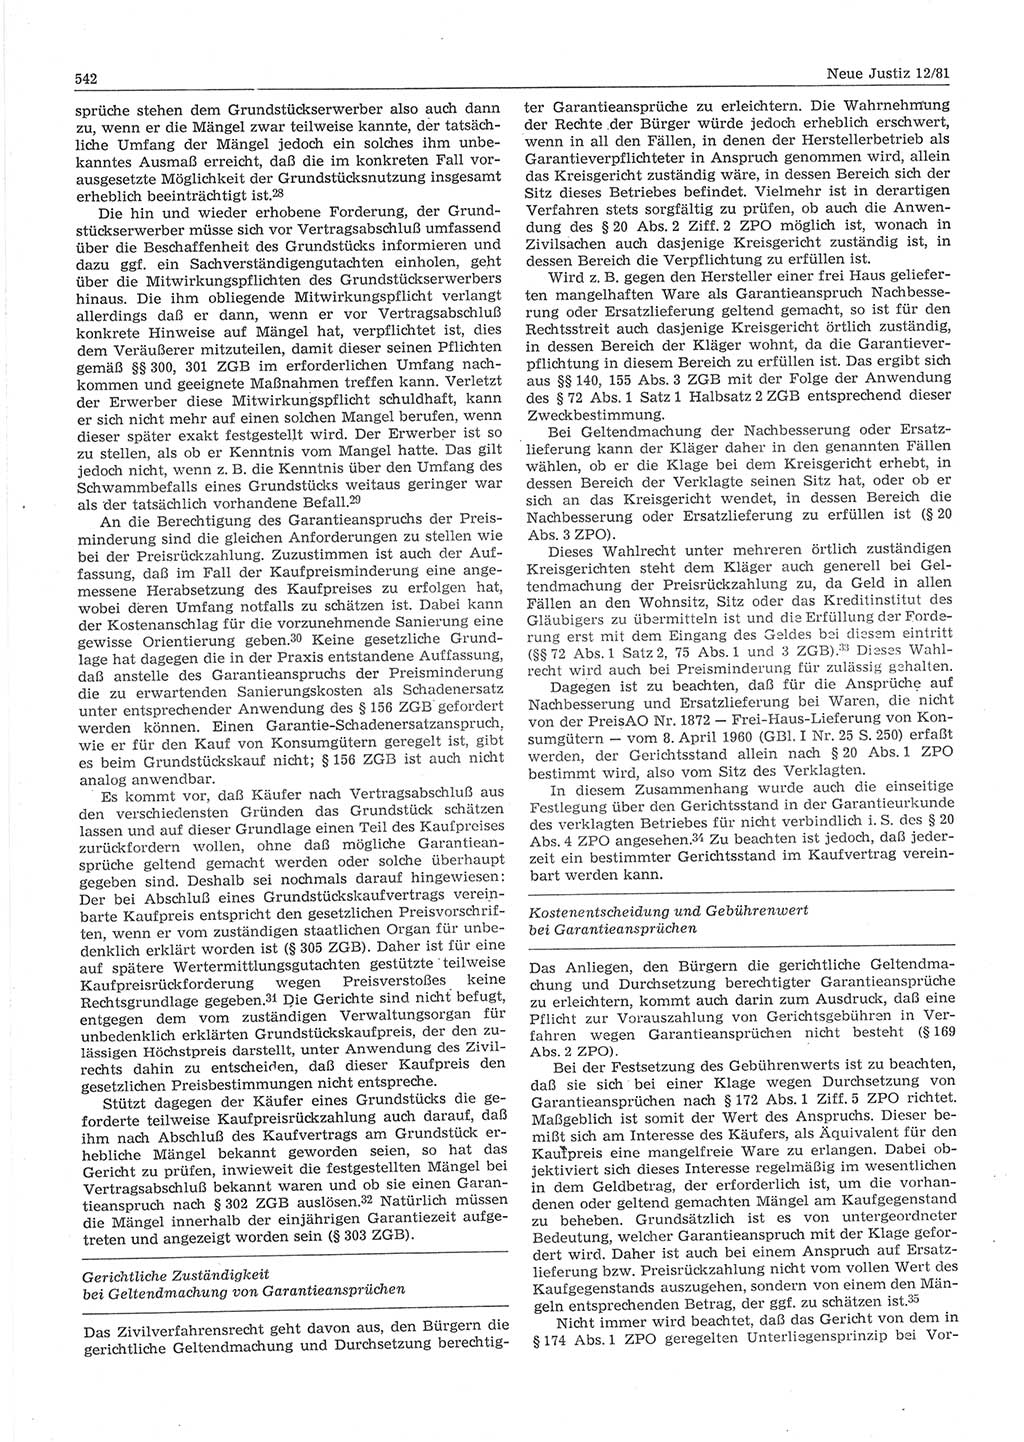 Neue Justiz (NJ), Zeitschrift für sozialistisches Recht und Gesetzlichkeit [Deutsche Demokratische Republik (DDR)], 35. Jahrgang 1981, Seite 542 (NJ DDR 1981, S. 542)